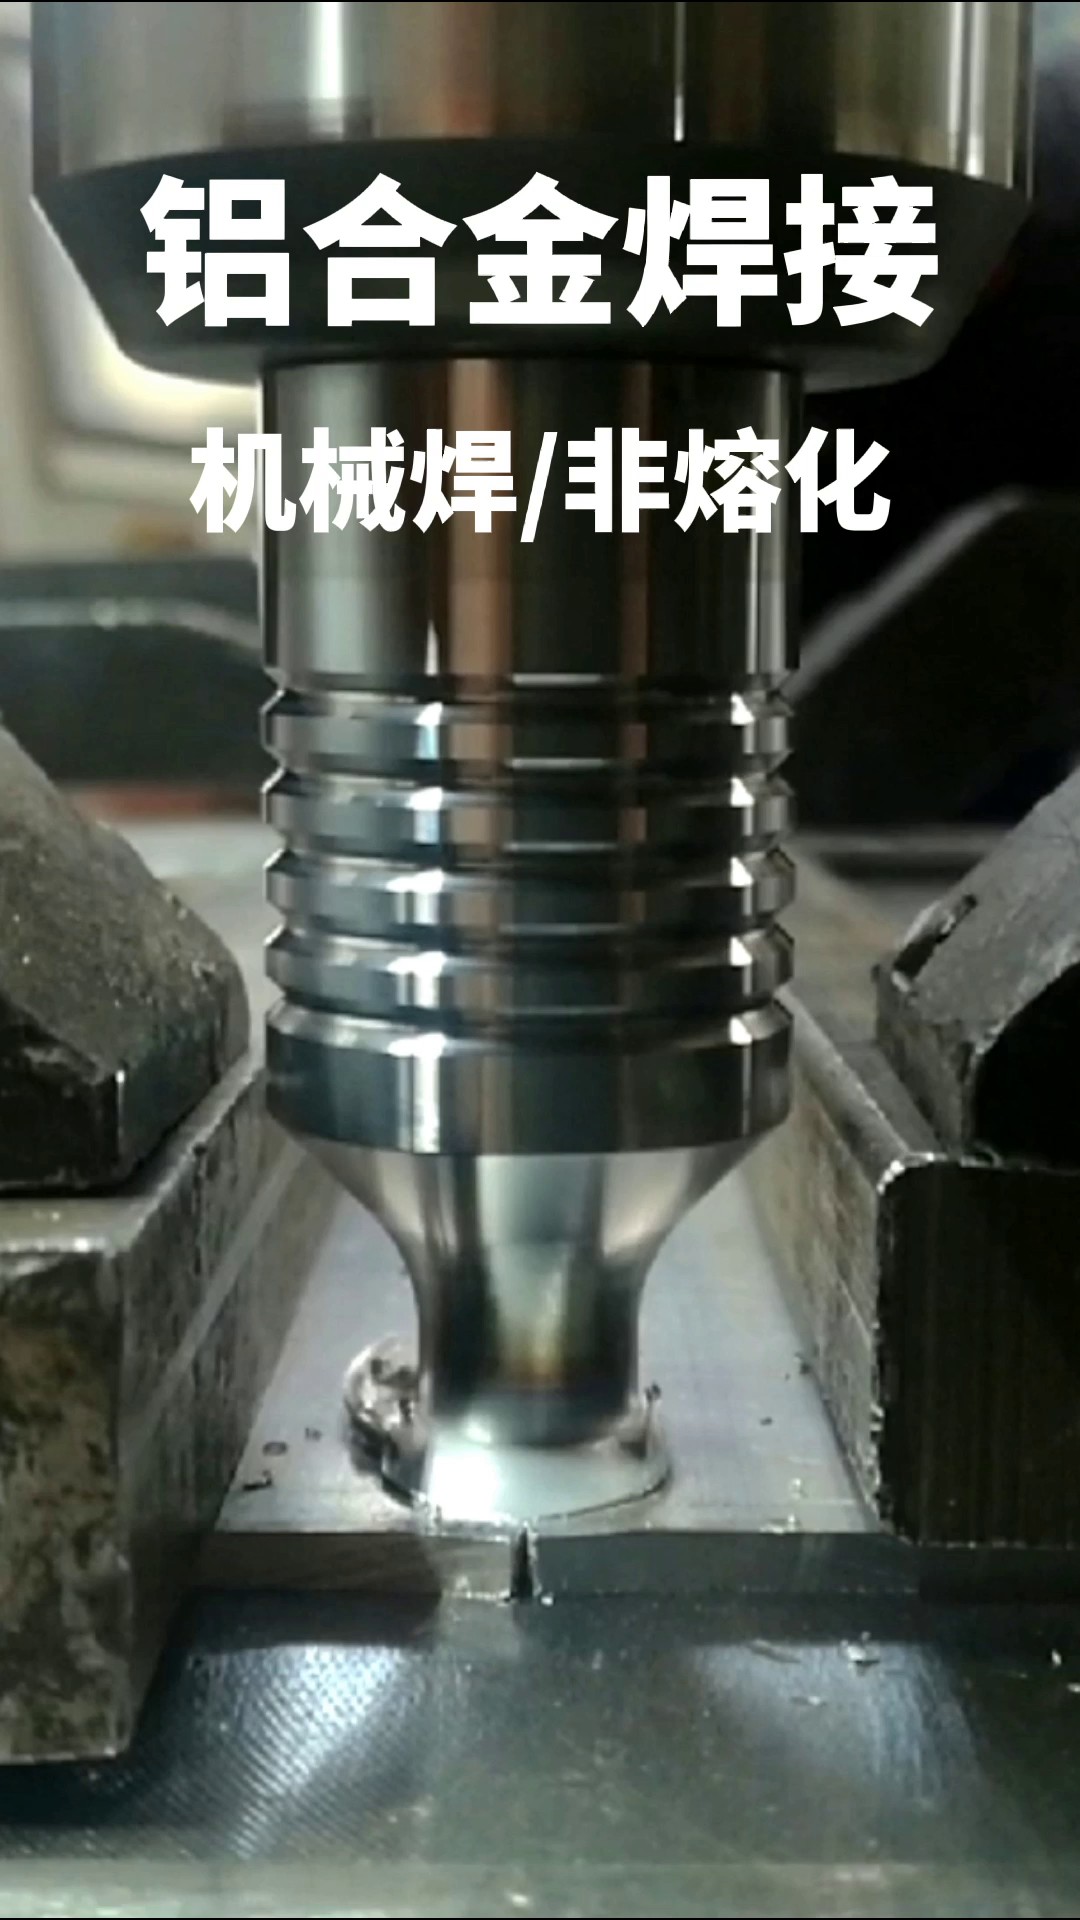 广东铝合金搅拌摩擦焊报价行情,搅拌摩擦焊